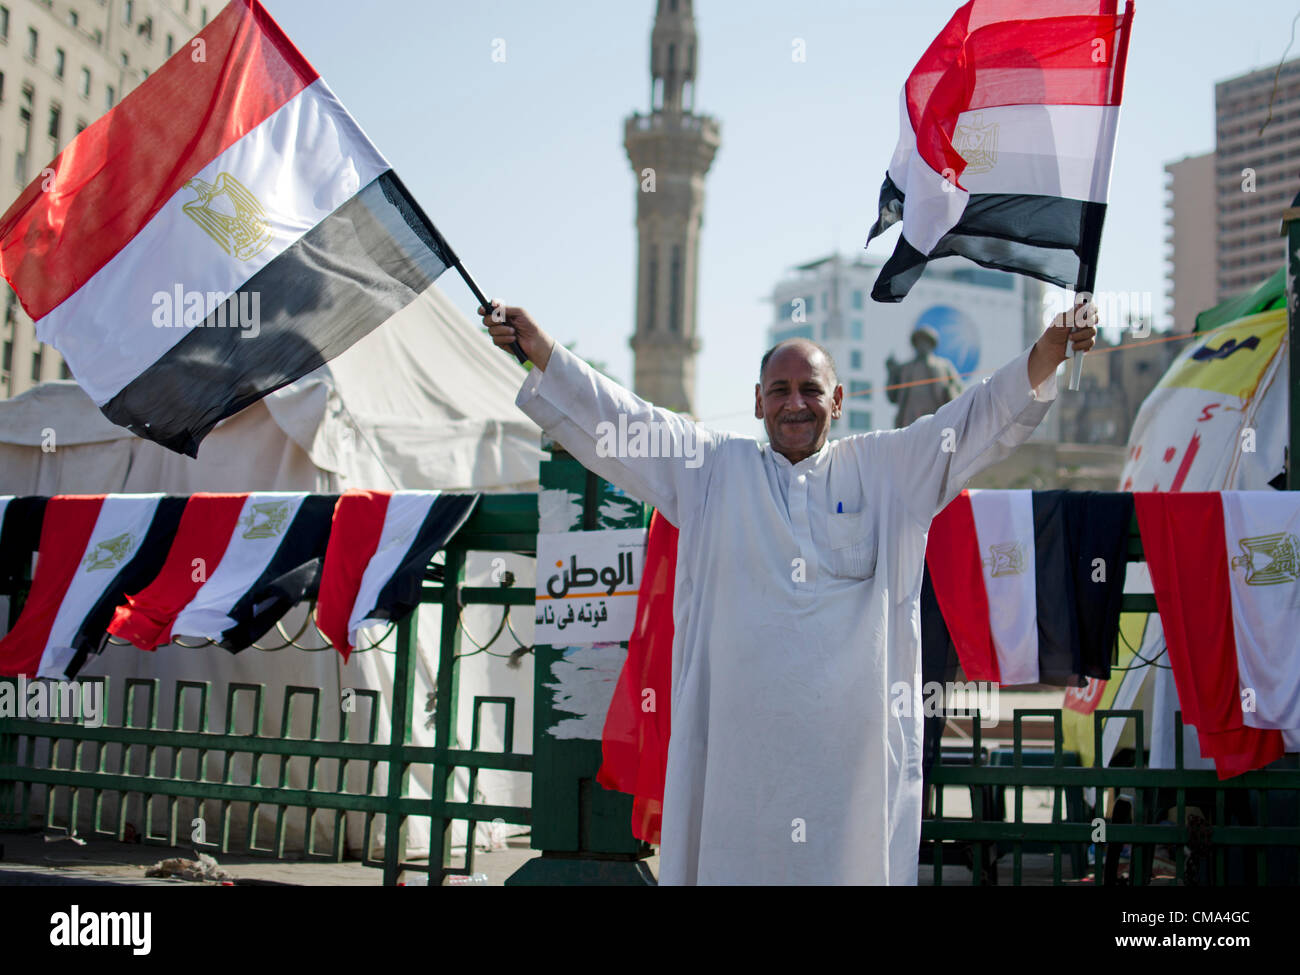 Un partisan de la candidate présidentielle Mohammed Morsi souligne les résultats de l'élection au Caire, la place Tahrir en Égypte le dimanche 01 juillet 2012. Banque D'Images